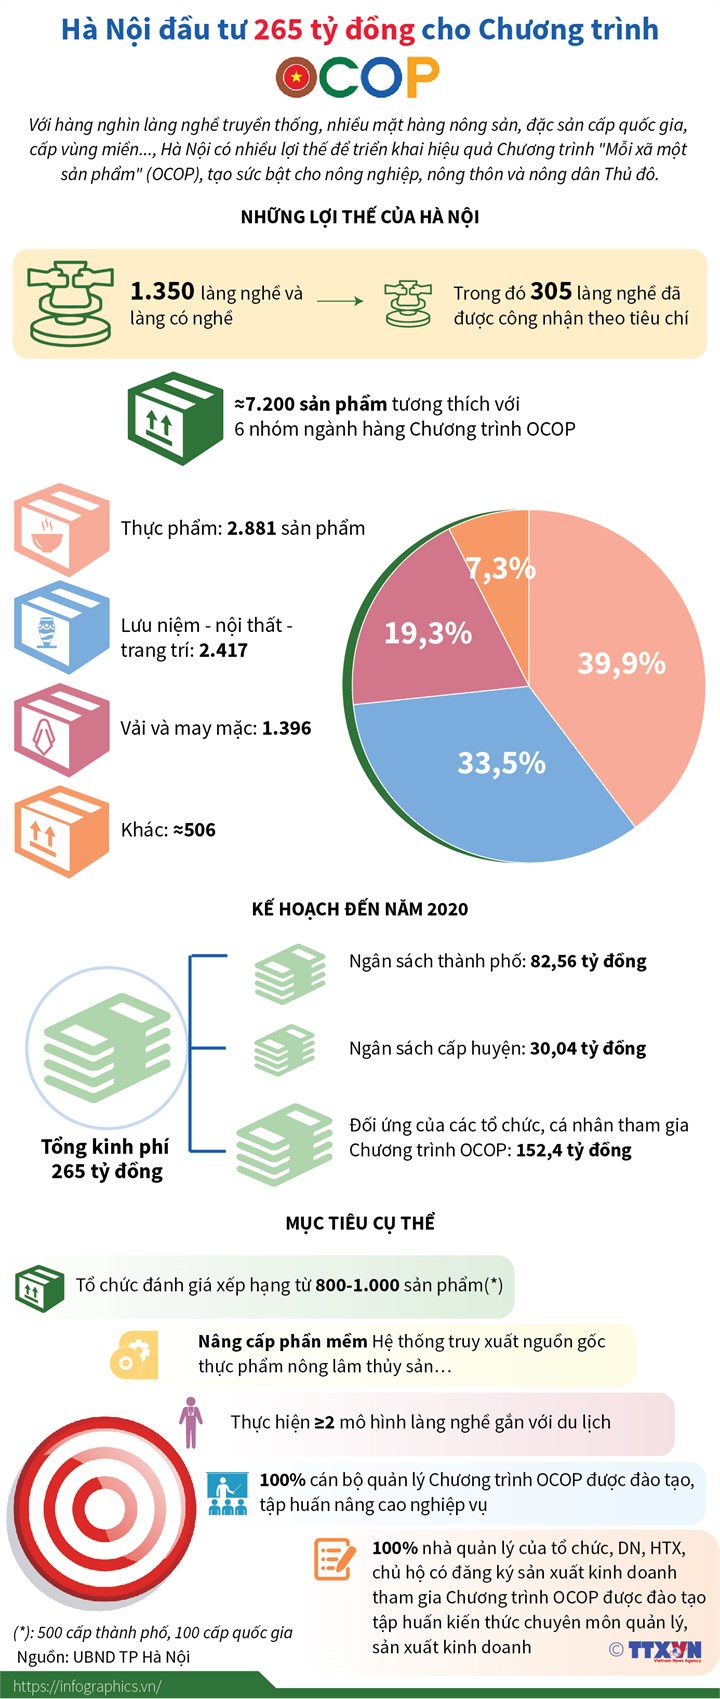 [Infographic] Hà Nội đầu tư 265 tỷ đồng cho Chương trình OCOP - Ảnh 1